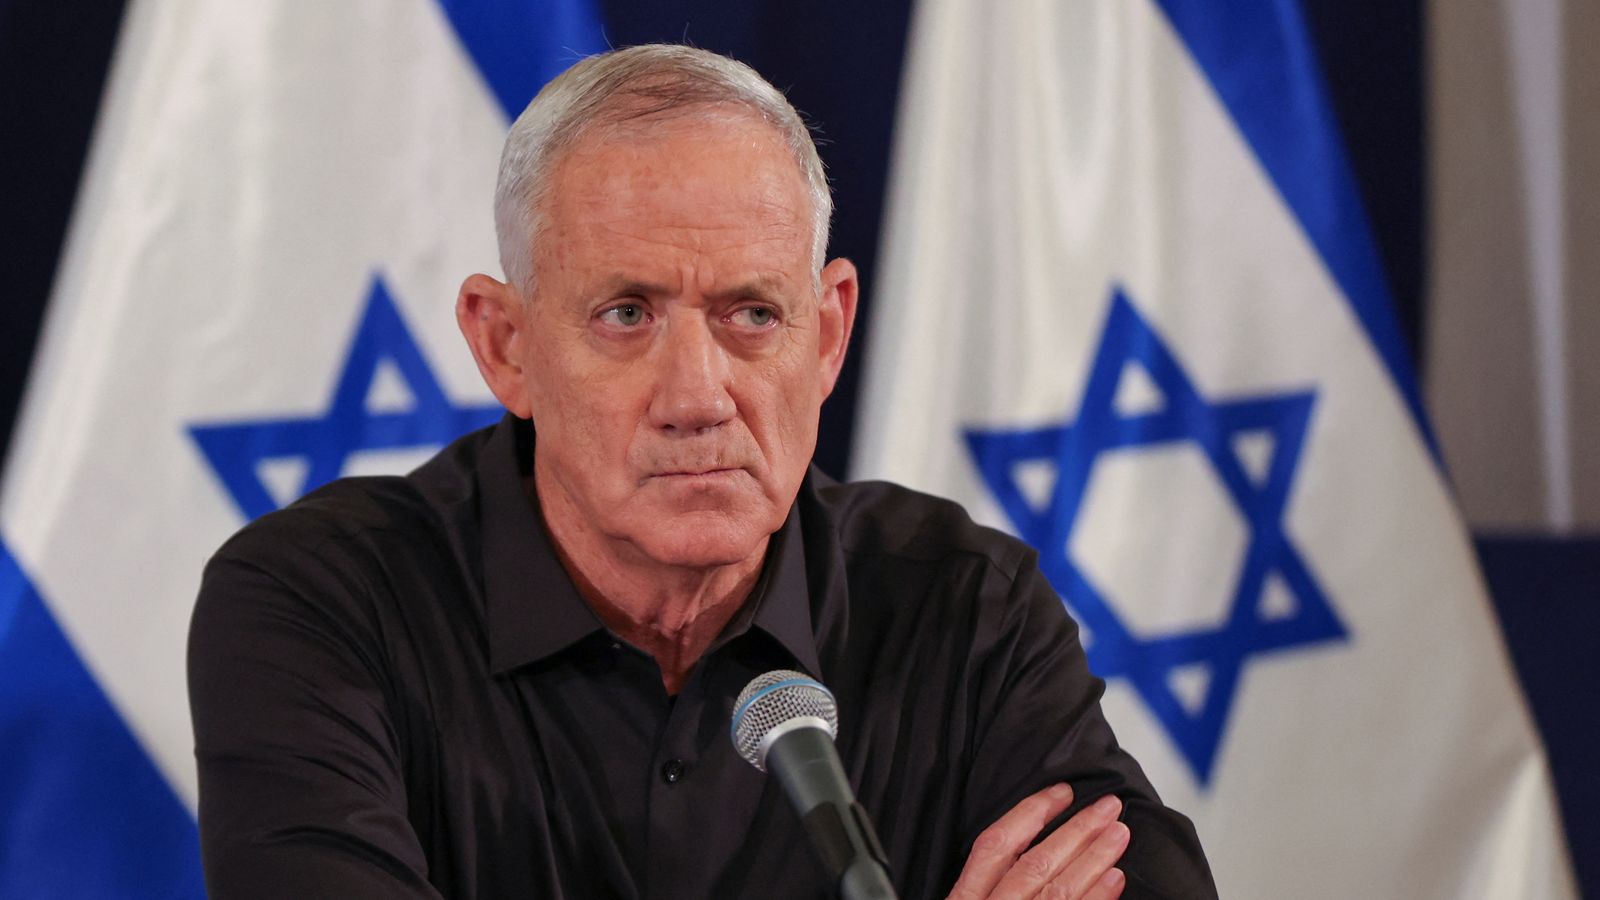 بيني غانتس: عضو مجلس الوزراء الحربي الإسرائيلي بنيامين نتنياهو يهدد بالاستقالة إذا لم يتم قبول الخطة الجديدة لغزة |  اخبار العالم